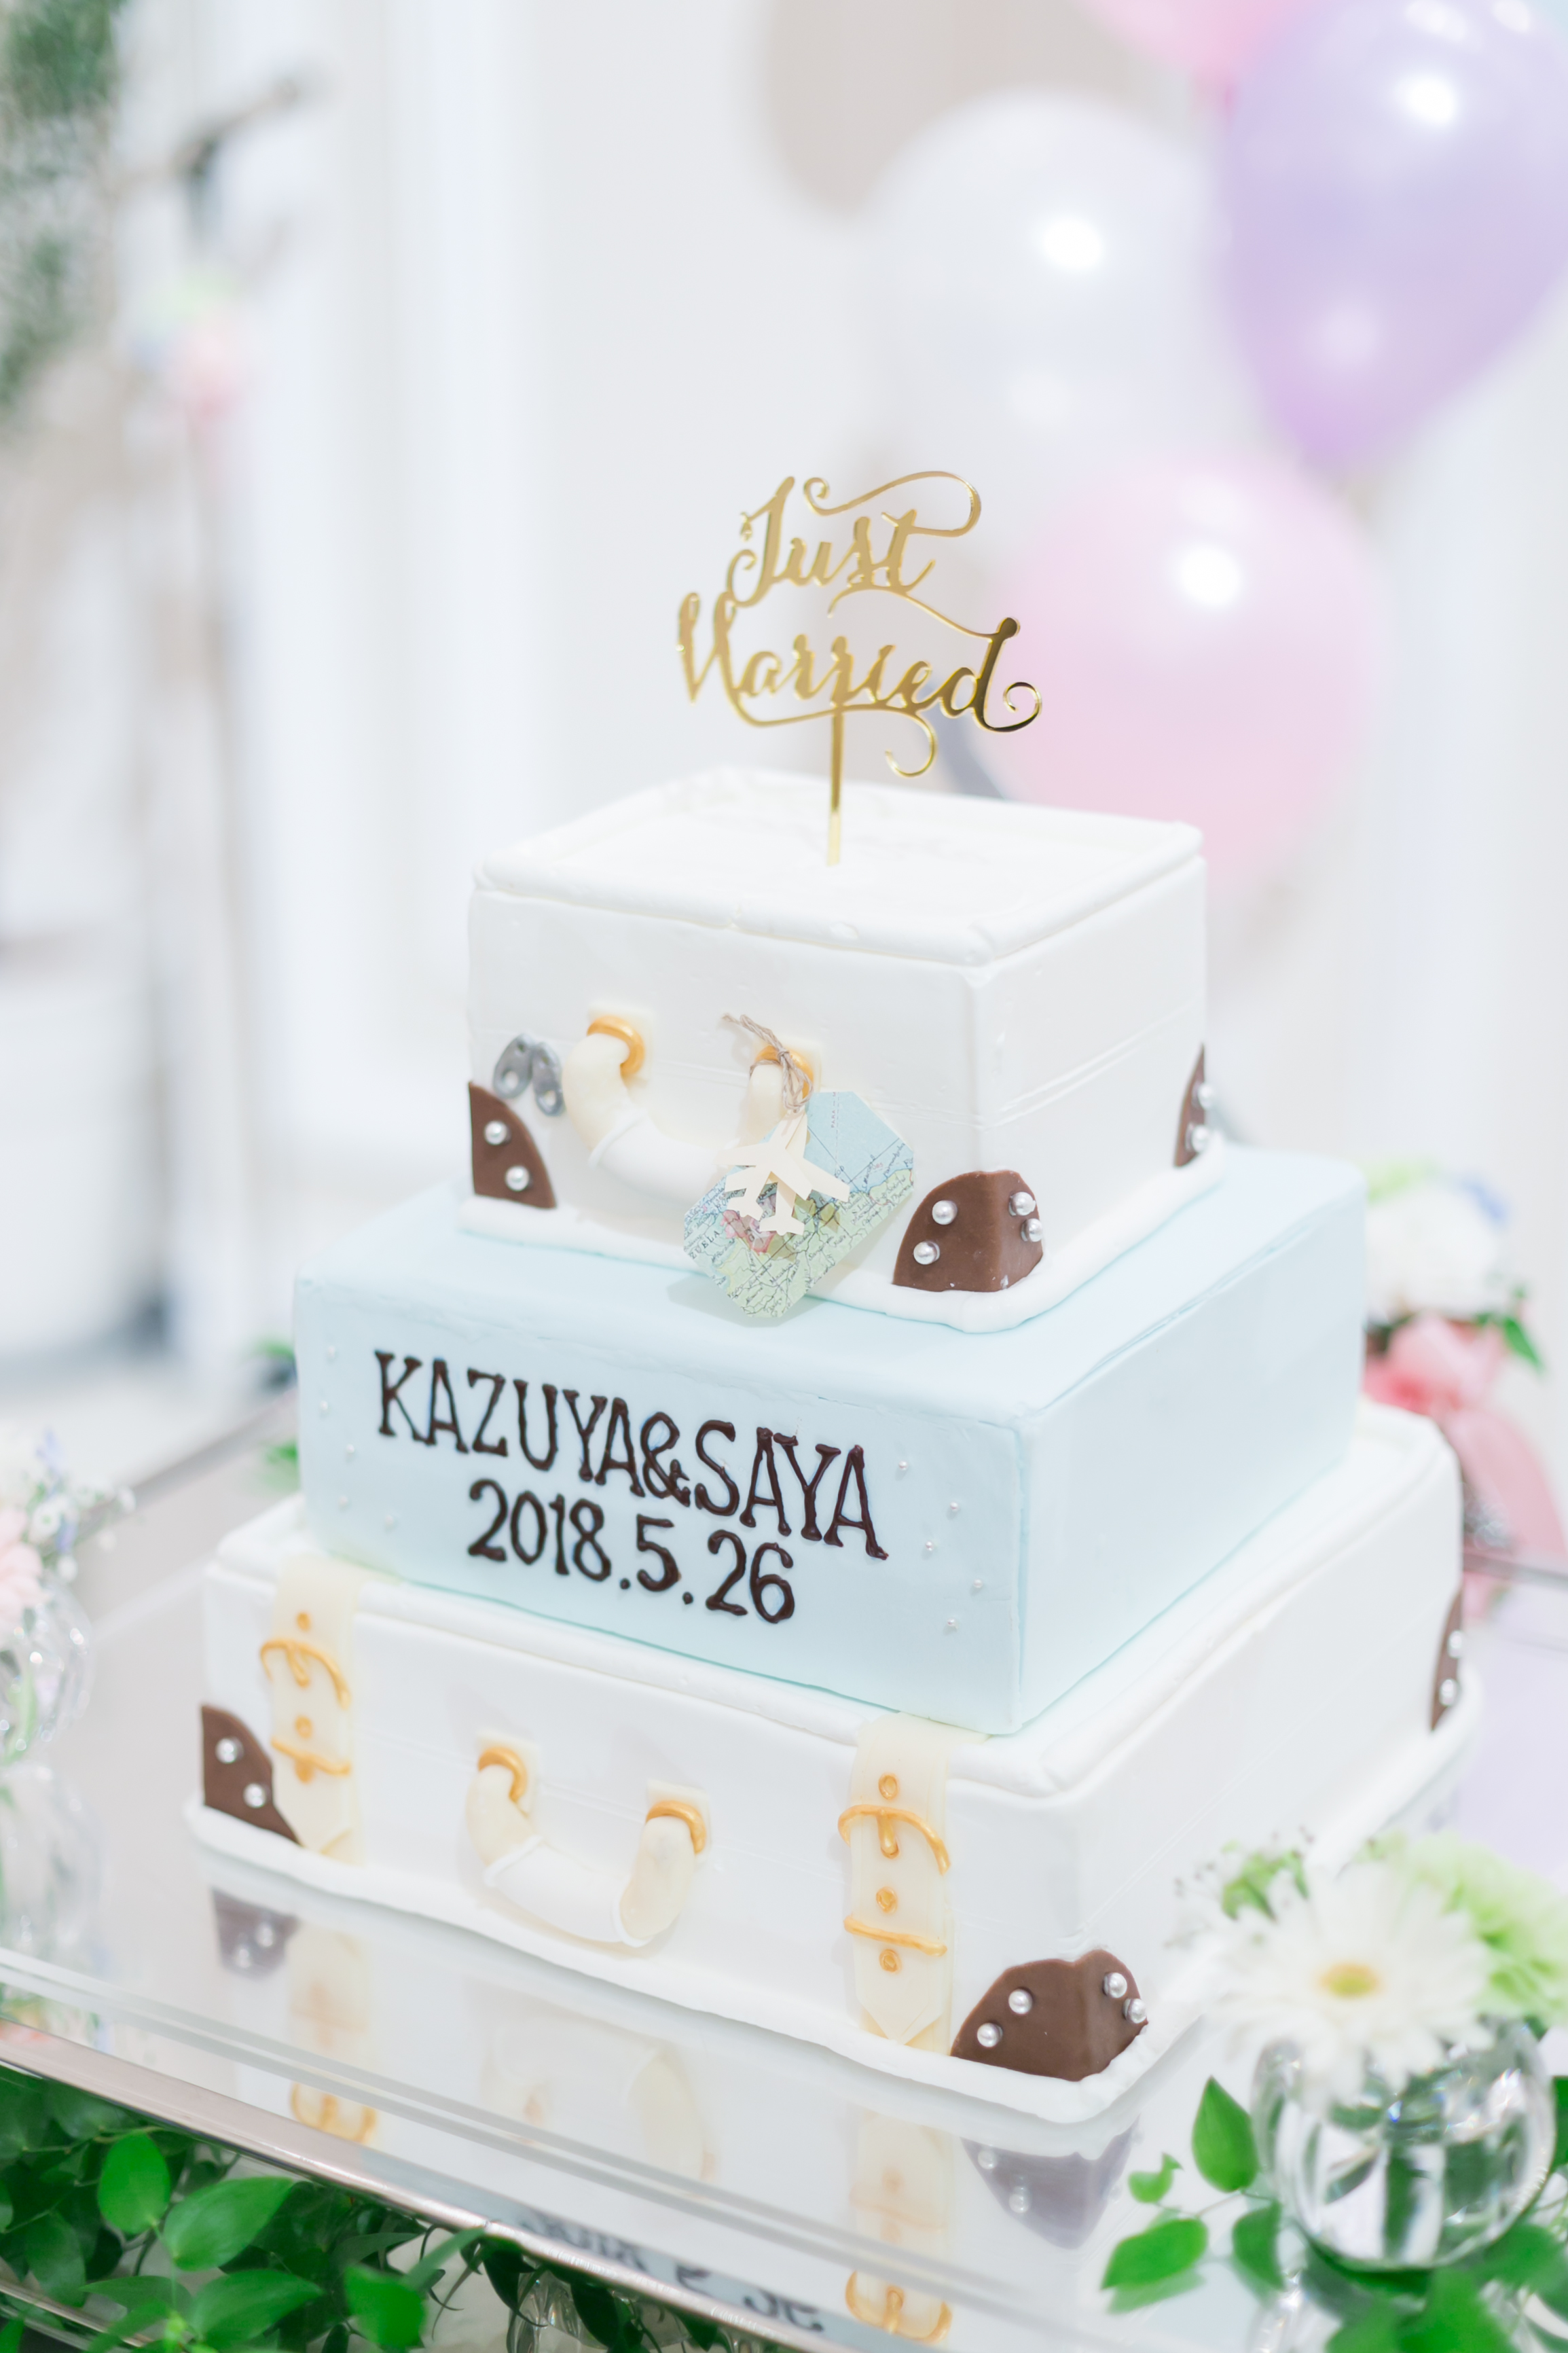 ウェディングケーキ ブログ パーティレポート 大阪 天保山の結婚式なら ル センティフォーリア 天保山